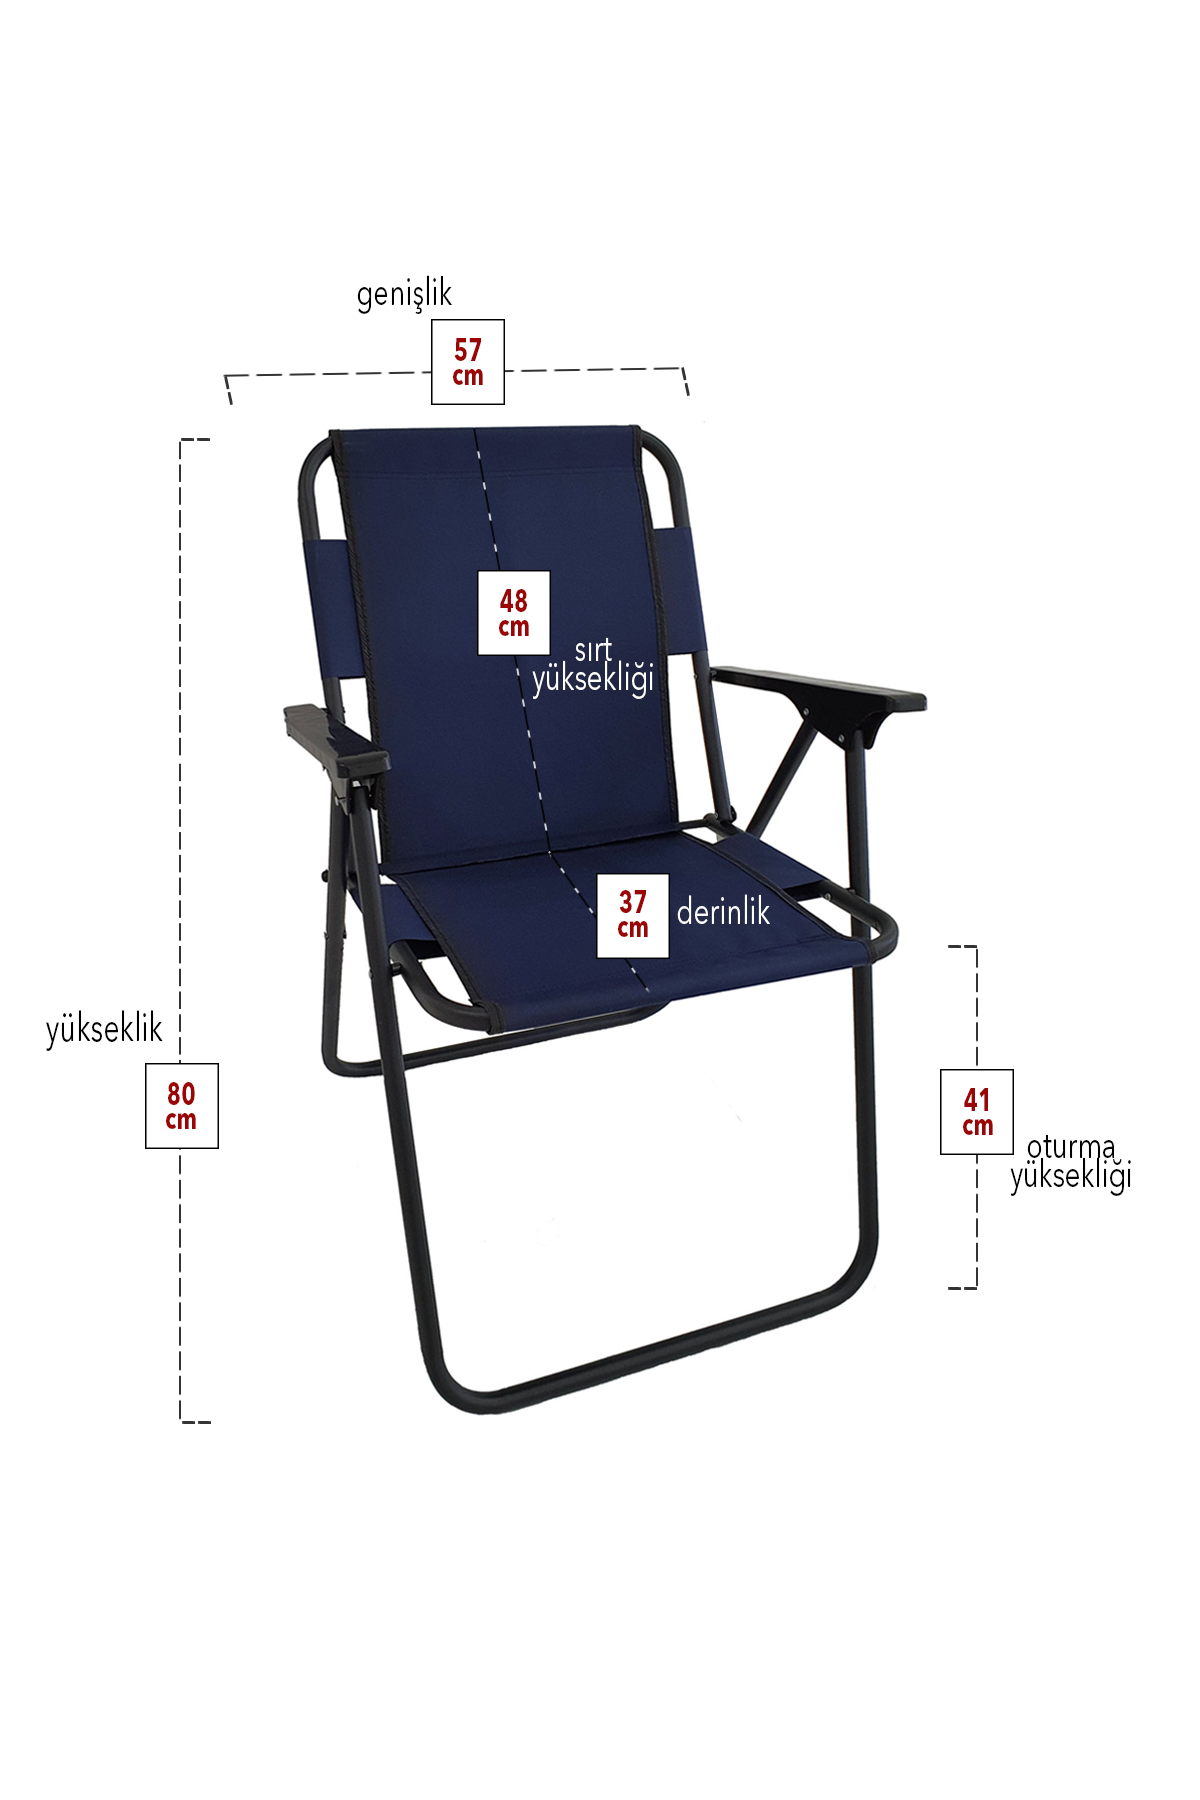 Bofigo 2 Pcs Camping Chair Folding Chair Picnic Chair Beach Chair Navy Blue